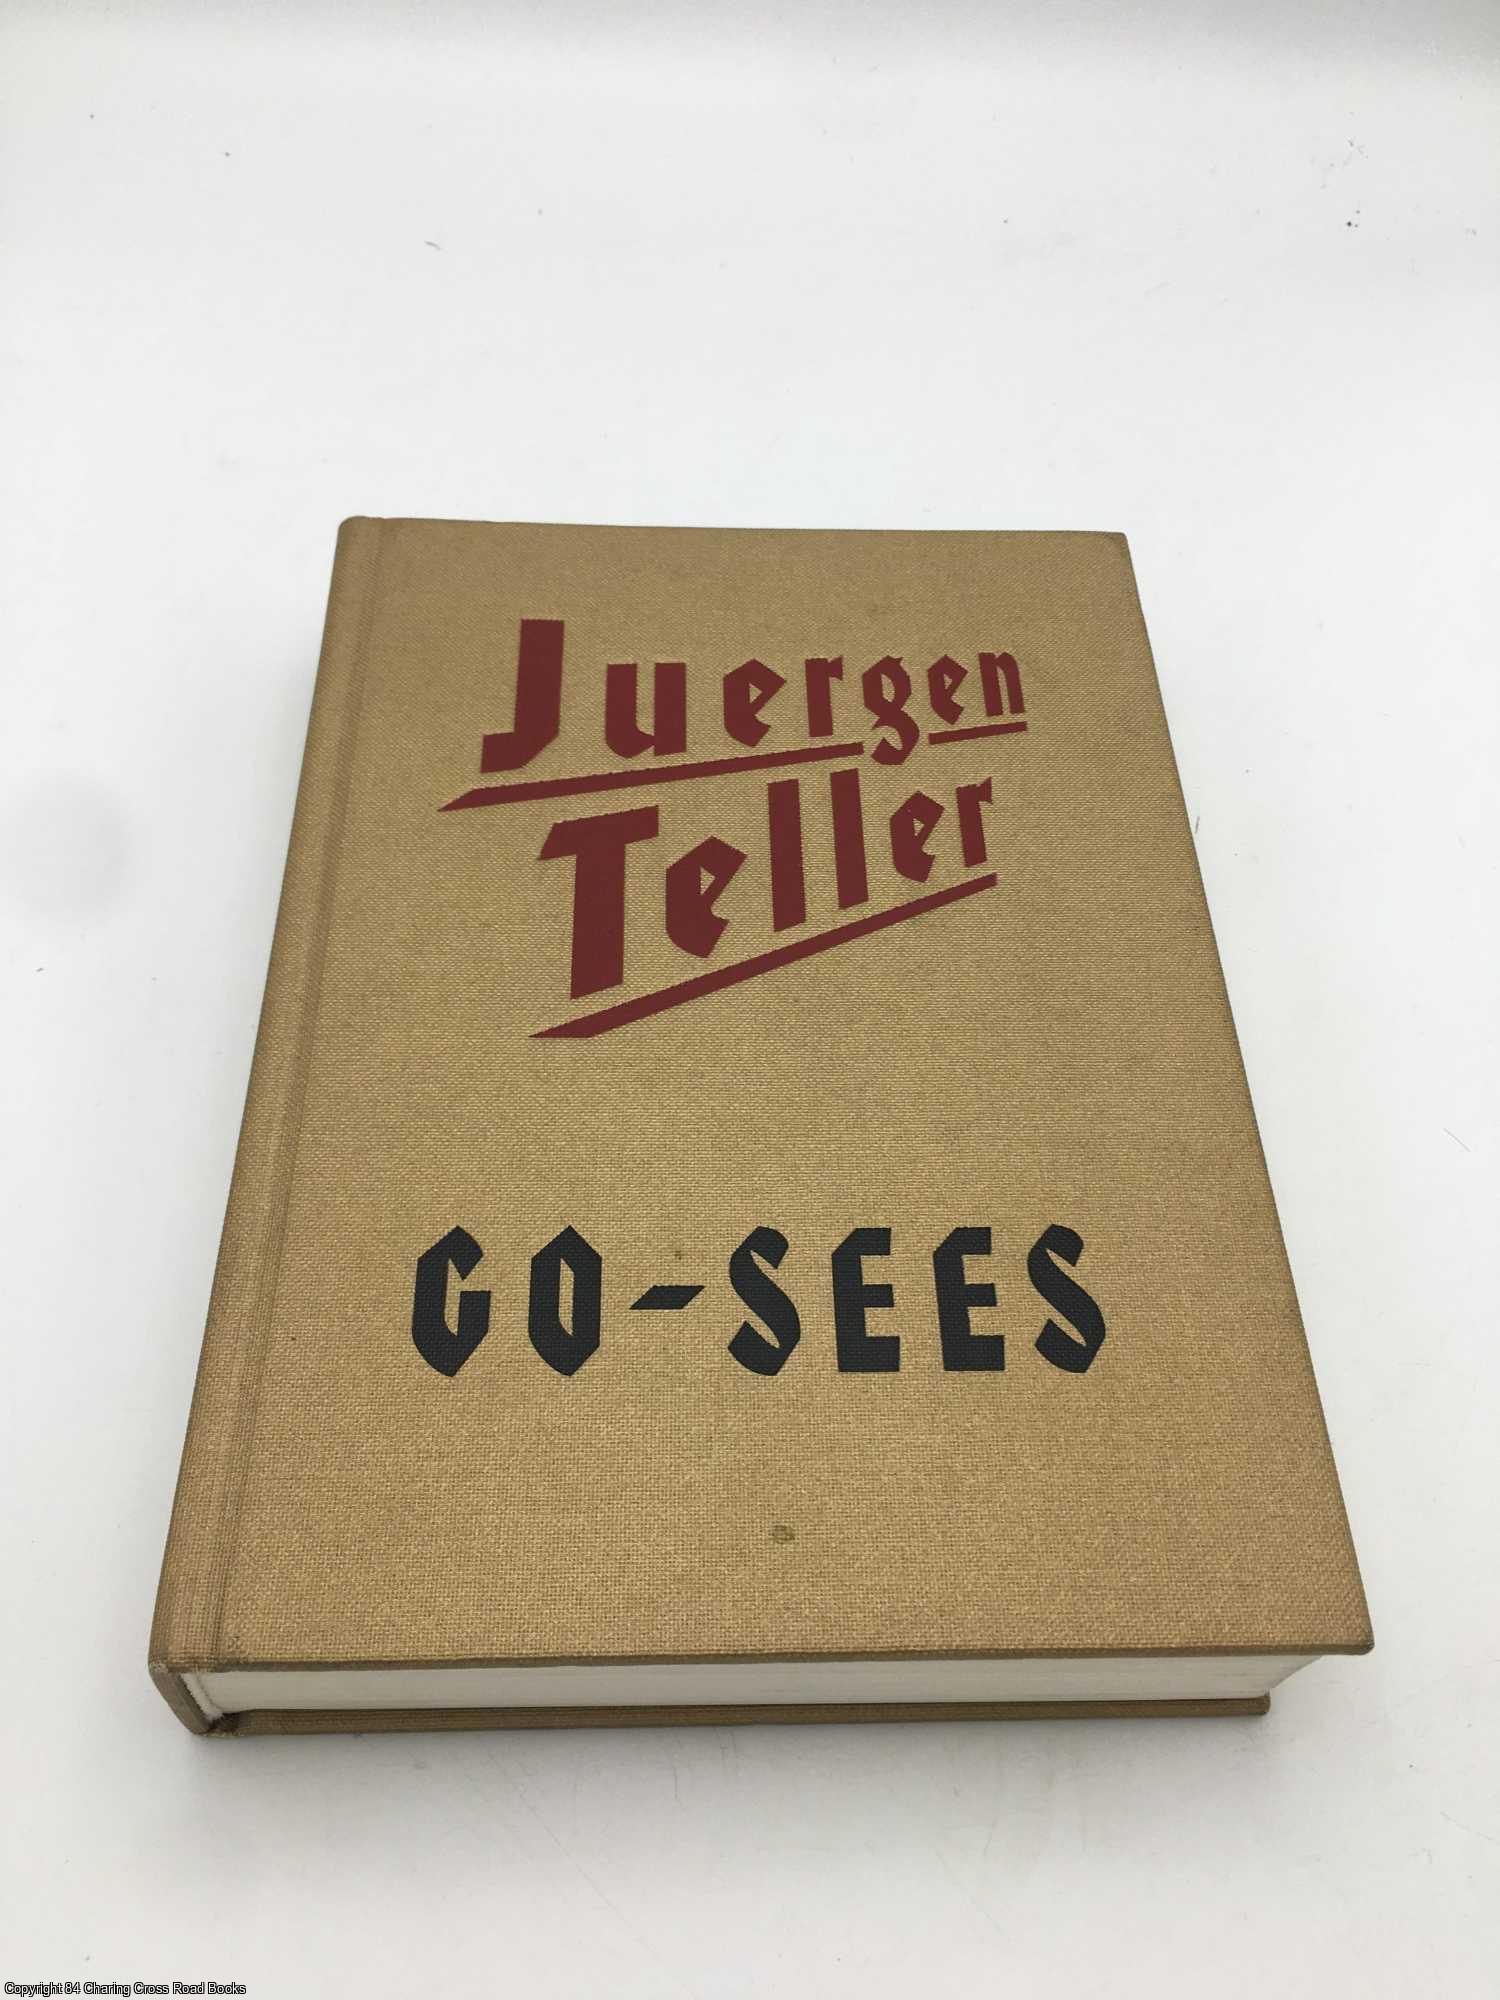 Juergen Teller Go-Sees | Juergen Teller | First Edition